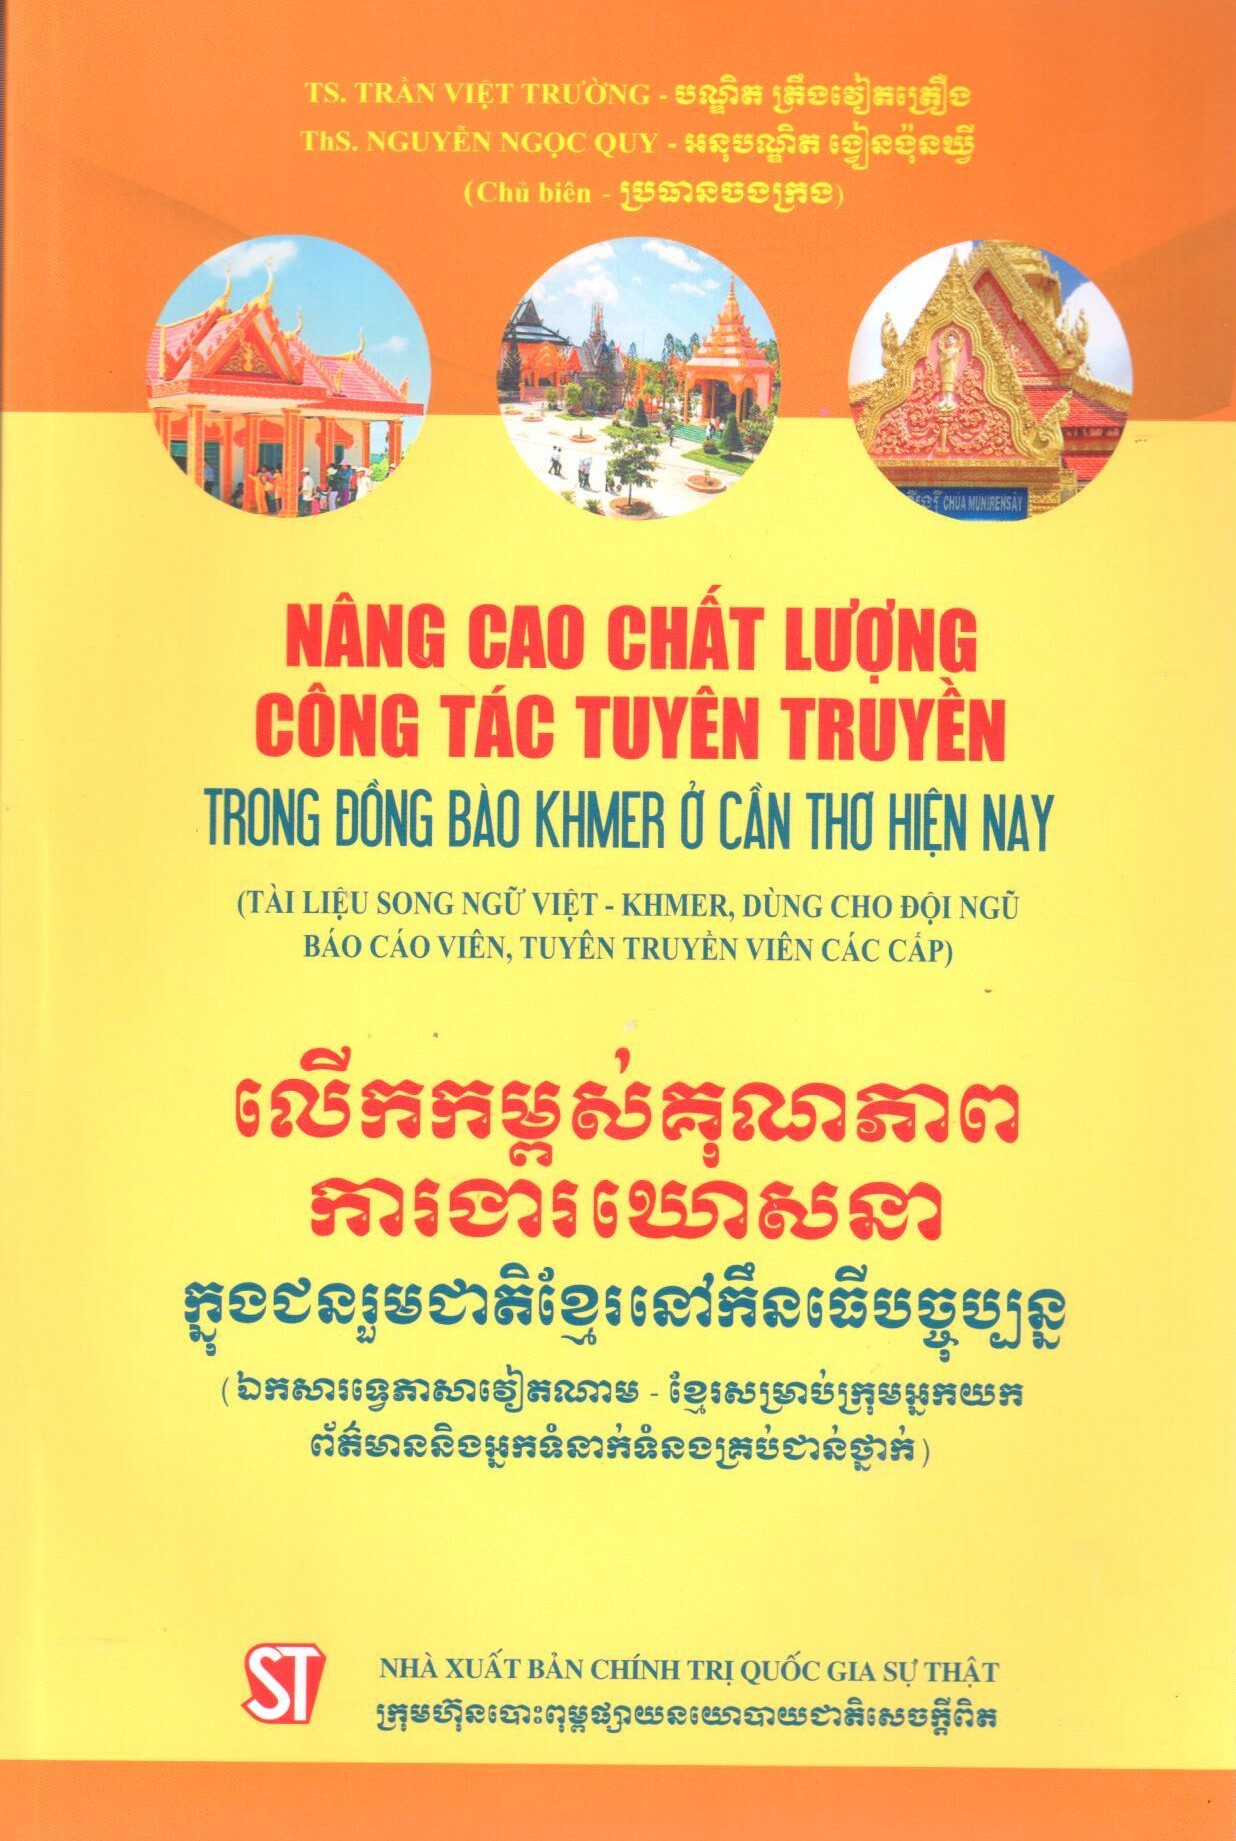 Nâng cao chất lượng công tác tuyên truyền trong đồng bào Khmer ở Cần Thơ hiện nay (Tài liệu song ngữ Việt - Khmer, dùng cho đội ngũ báo cáo viên, tuyên truyền viên các cấp)